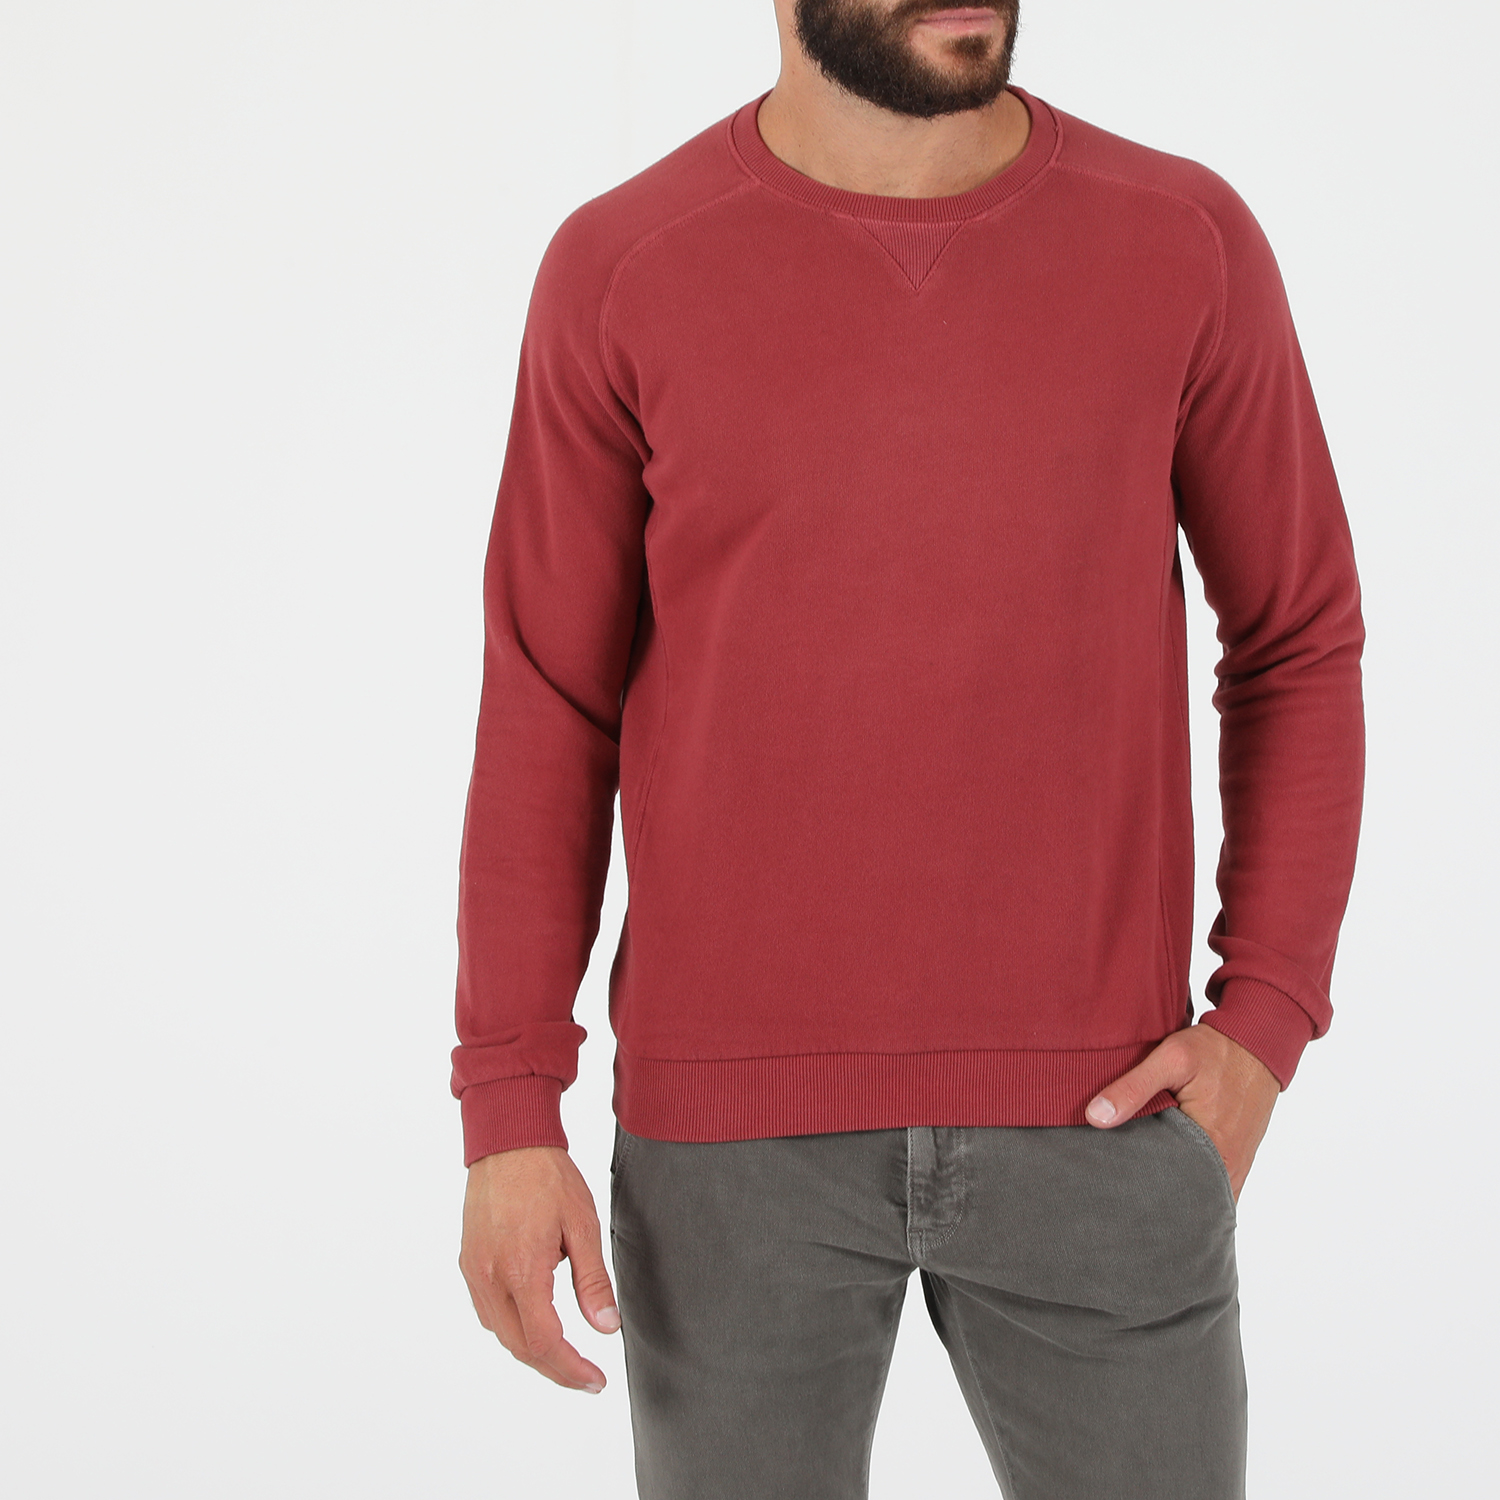 Ανδρικά/Ρούχα/Φούτερ/Μπλούζες DIRTY LAUNDRY - Ανδρική φούτερ μπλούζα DIRTY LAUNDRY COLLEGE CREWNECK κόκκινη